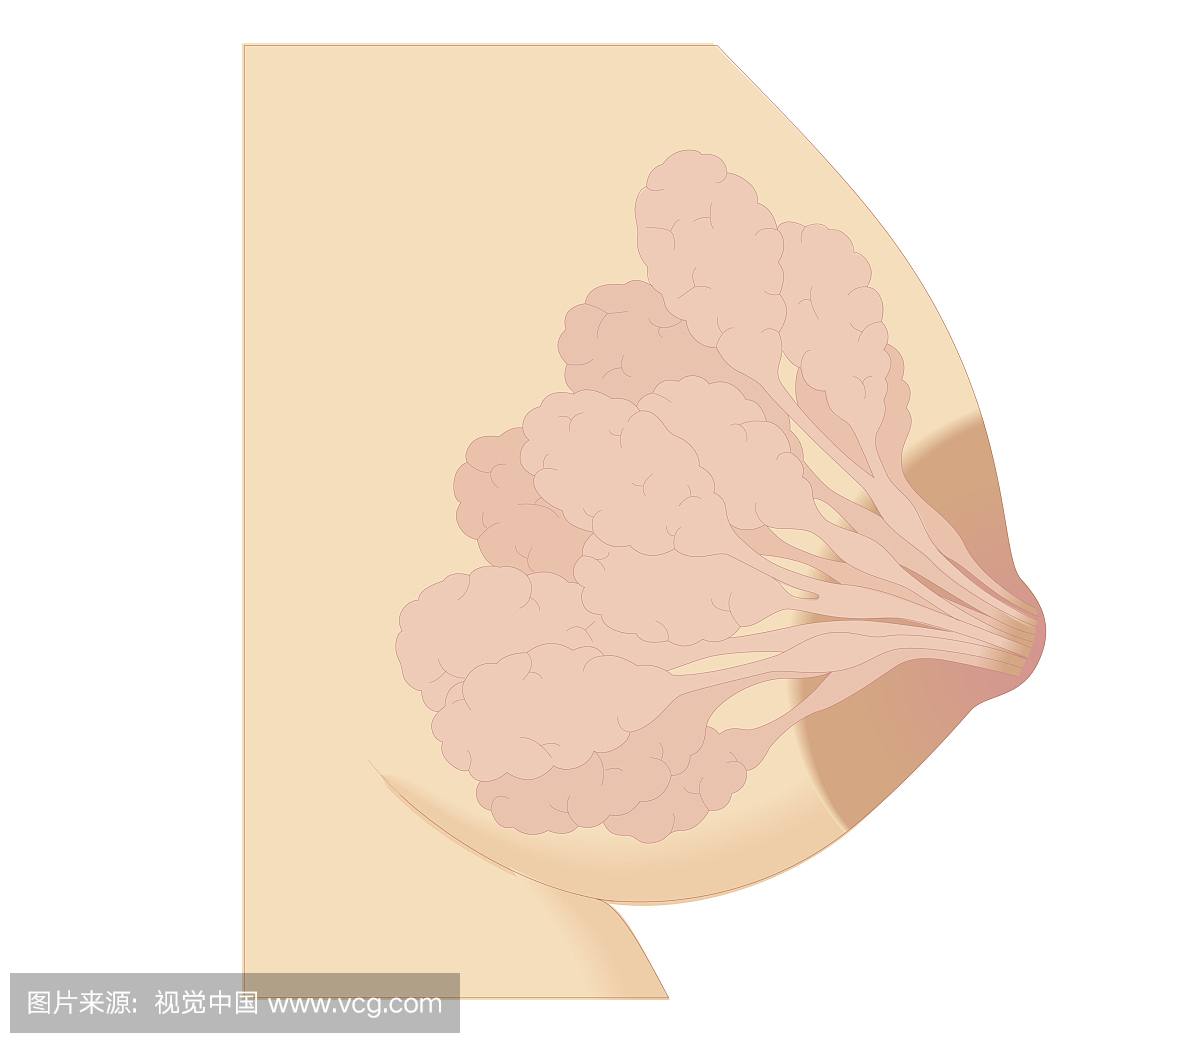 剖面生物医学图示怀孕期乳房变化